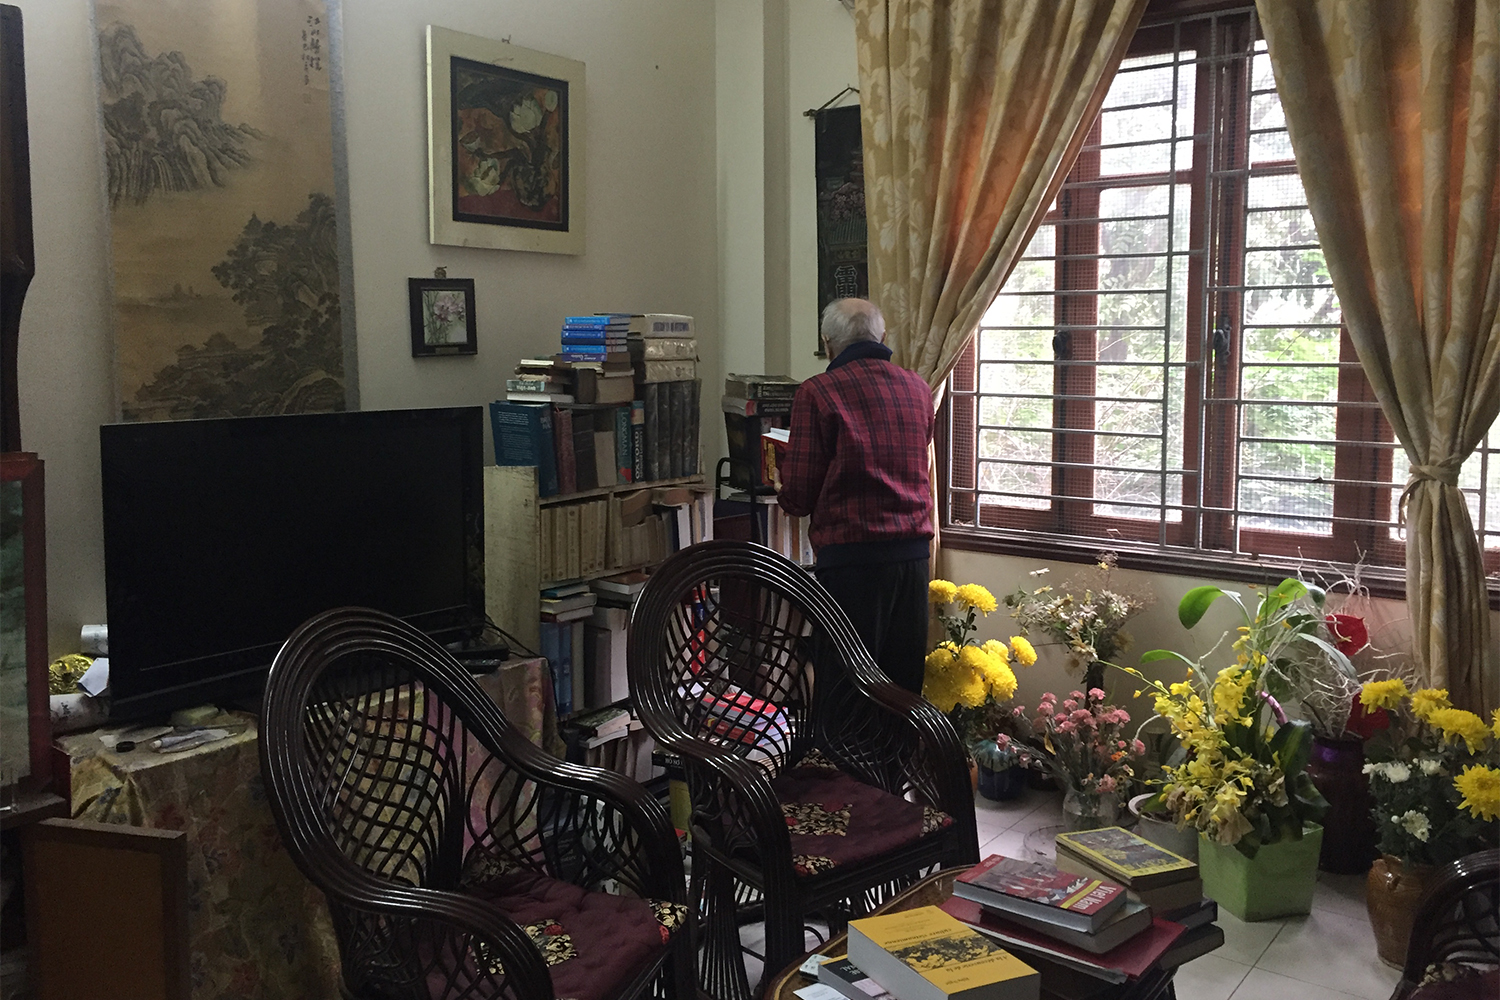 Pendant notre visite, Hữu Ngọc nous a montré les nombreux livres qu’il avait écrits, dont un ouvrage de 2000 pages sur la culture vietnamienne en français !